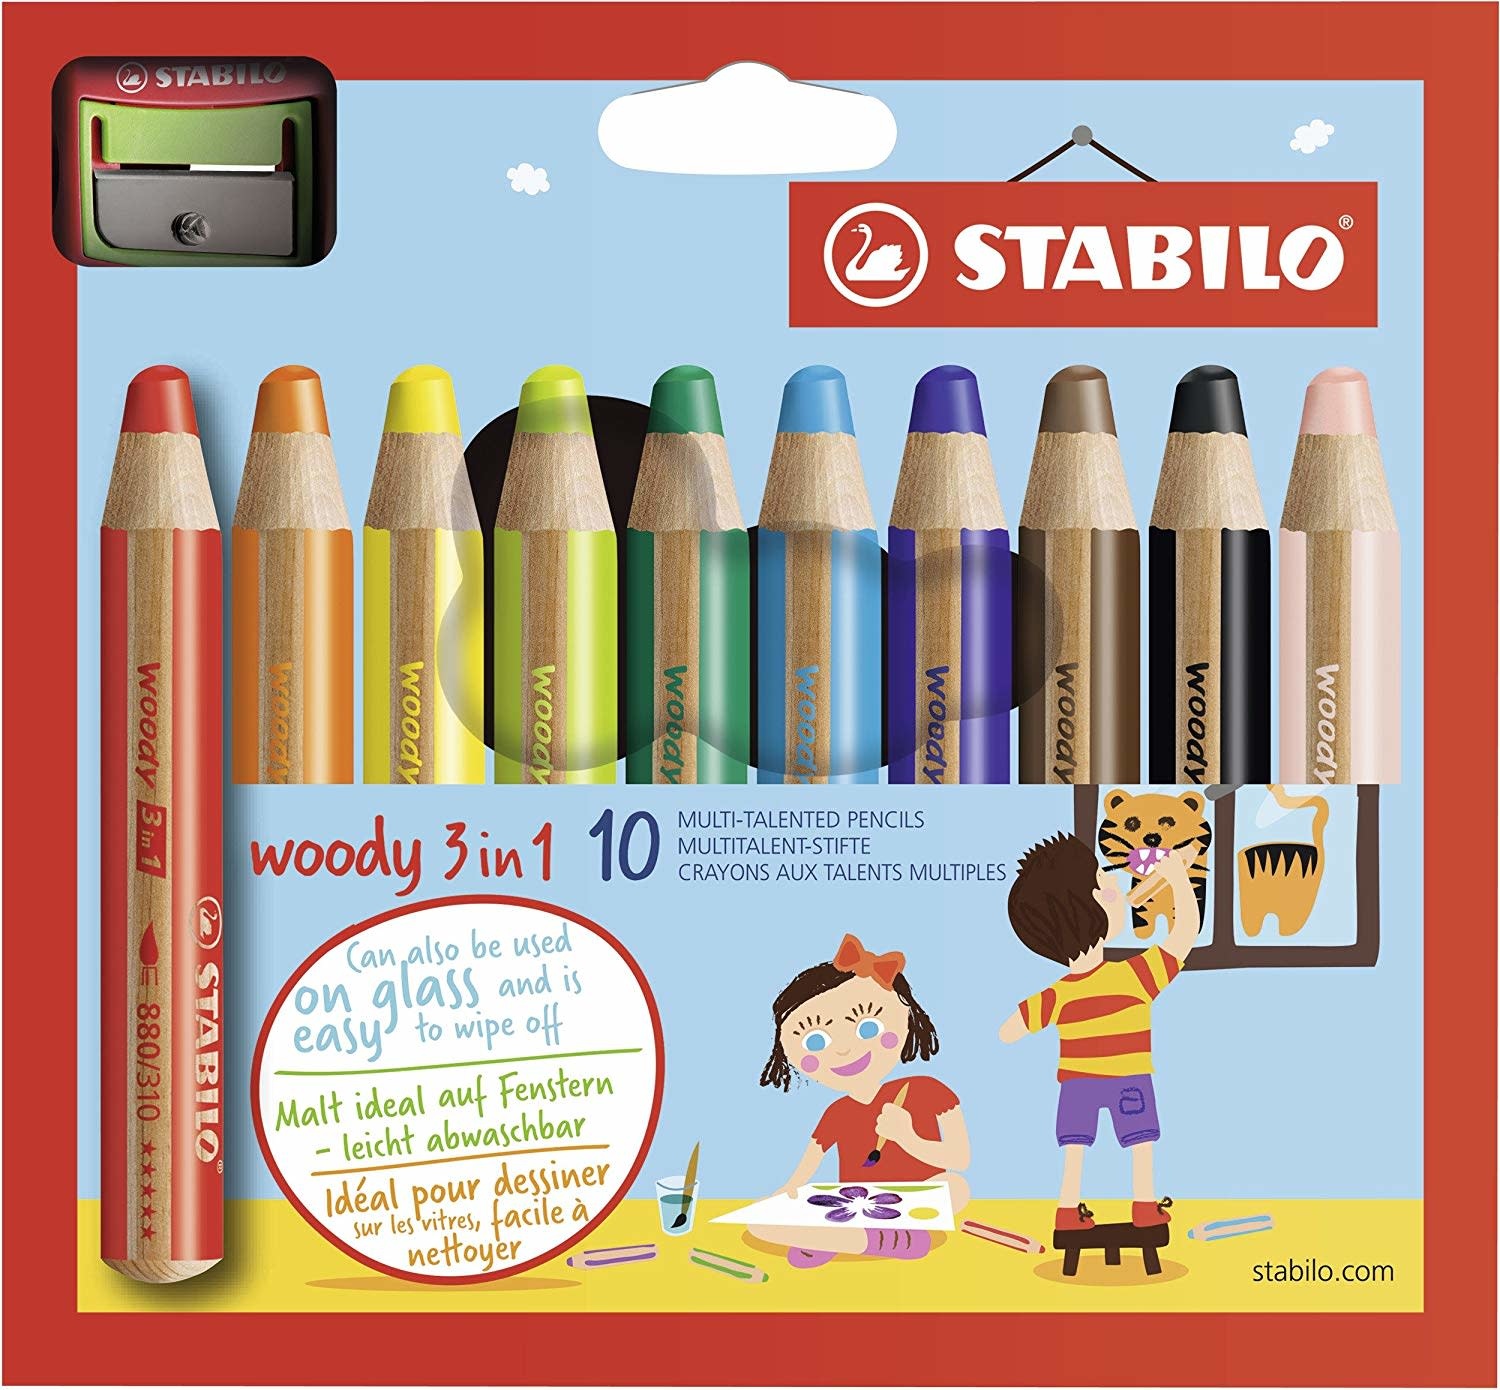 Crayon de couleur Maxi Be-bè enfant Pochette de 6 + taille-crayon